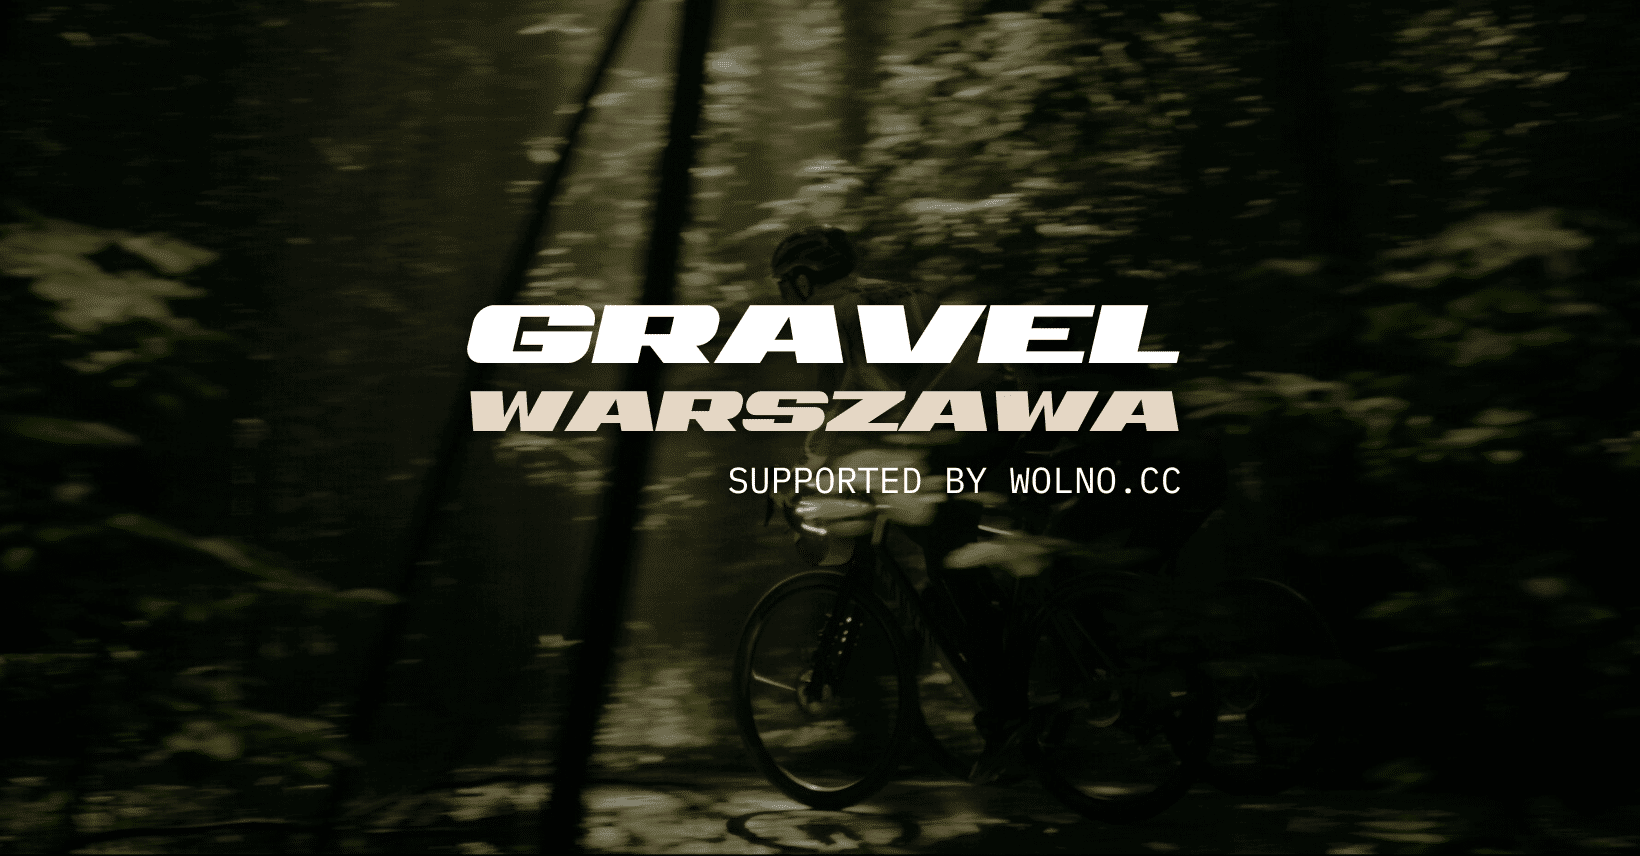 Gravel Warszawa